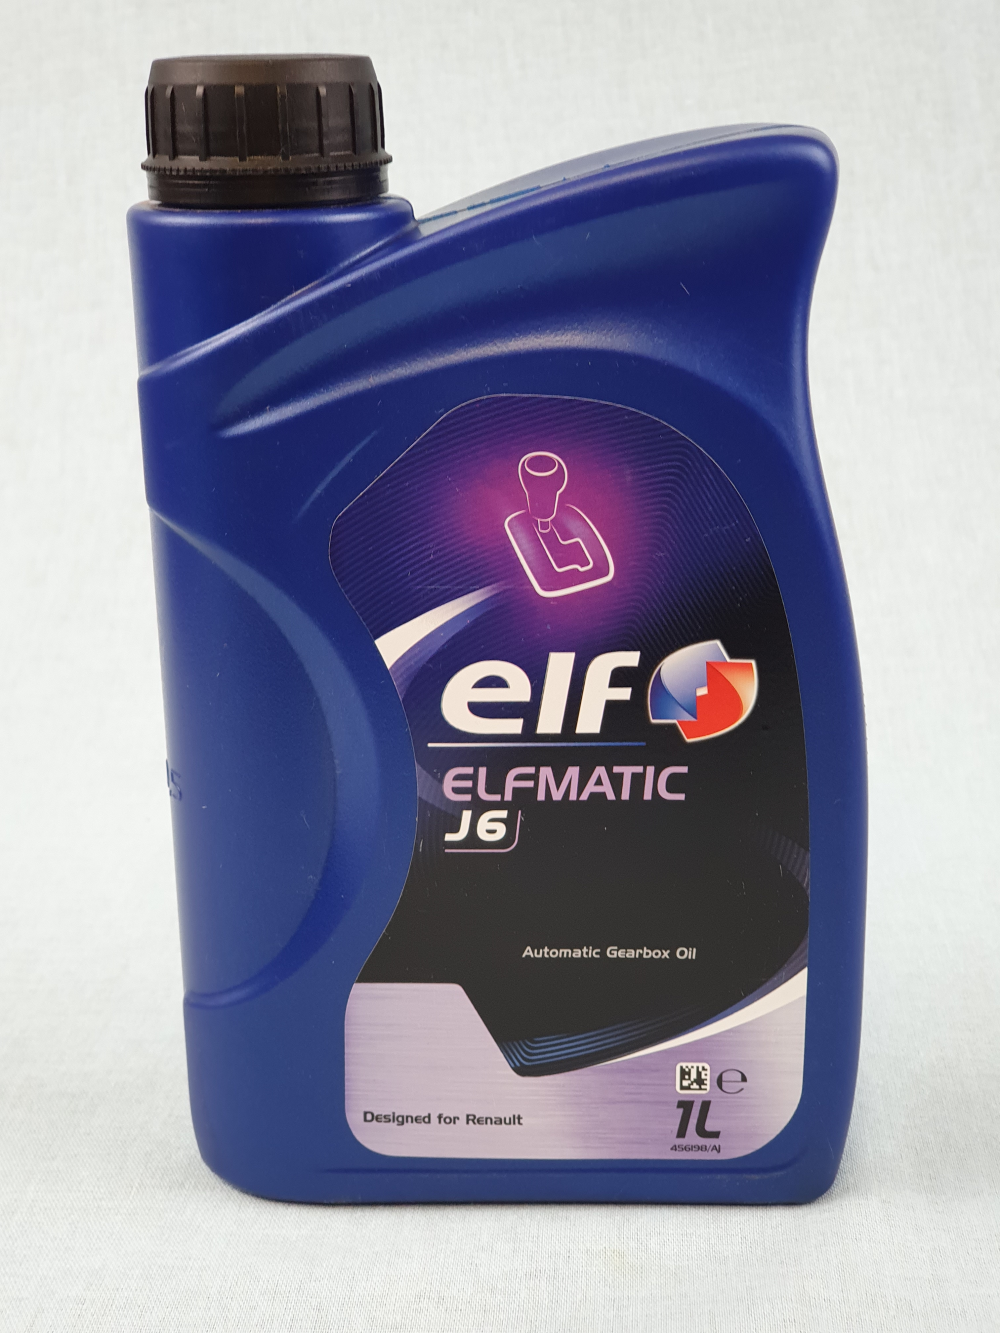 Elf Renaultmatic d3 syn 1л. Elf Elfmatic g3, 1л. Трансмиссионное масло Elf Elfmatic g3 syn. Эльф g3 Elfmatic артикул.